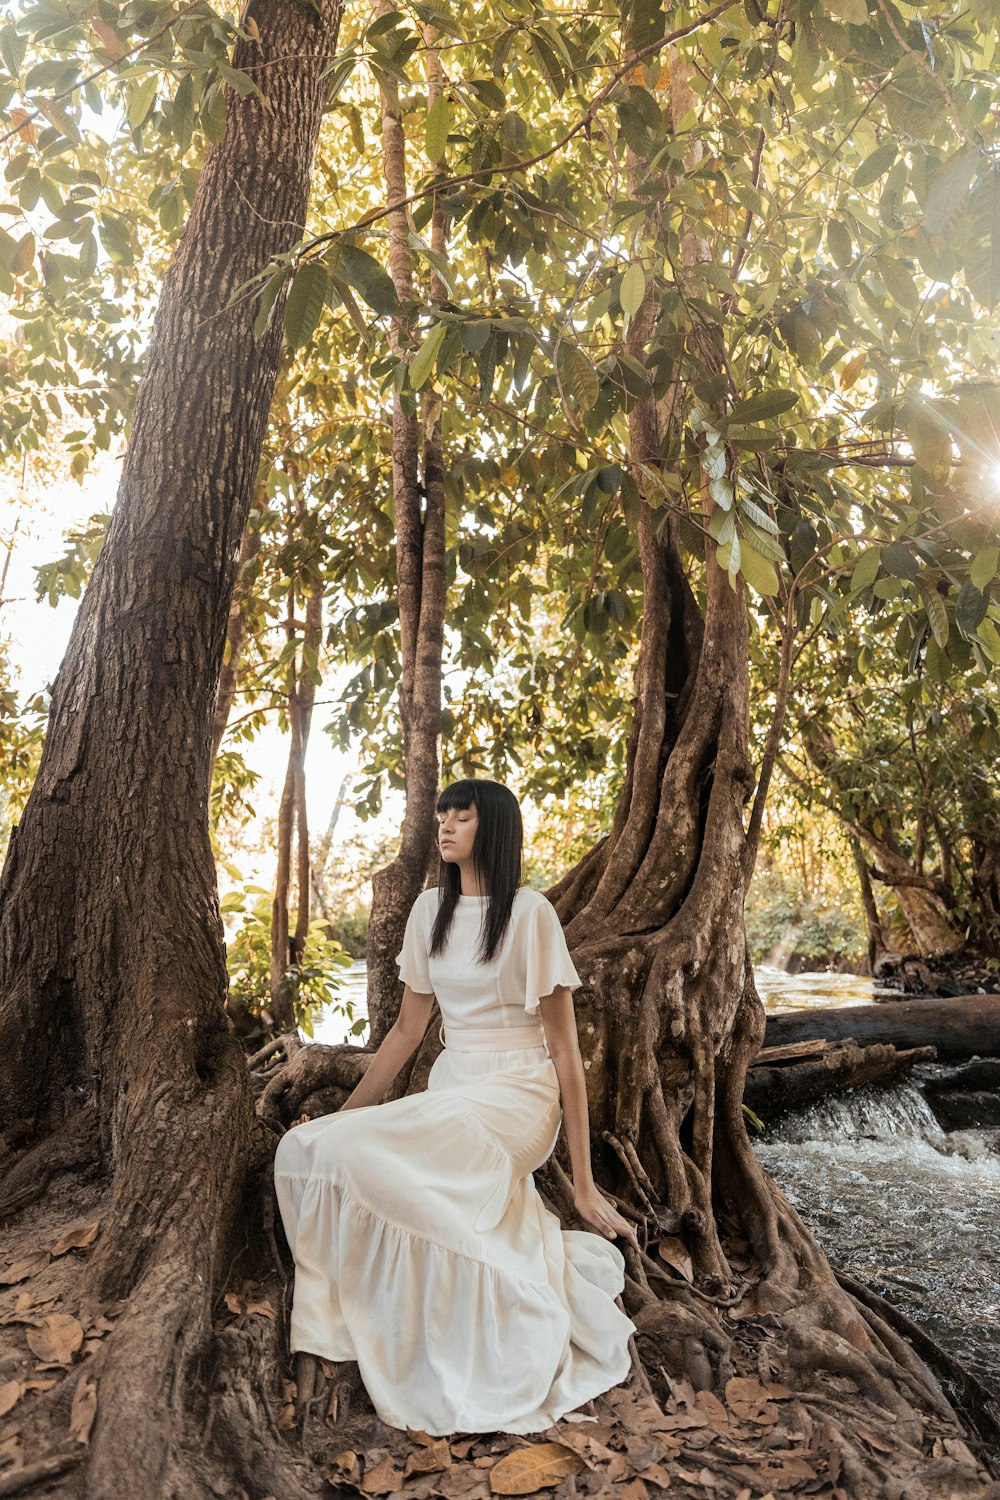 Mujer en vestido blanco sentada en el tronco de árbol marrón durante el día